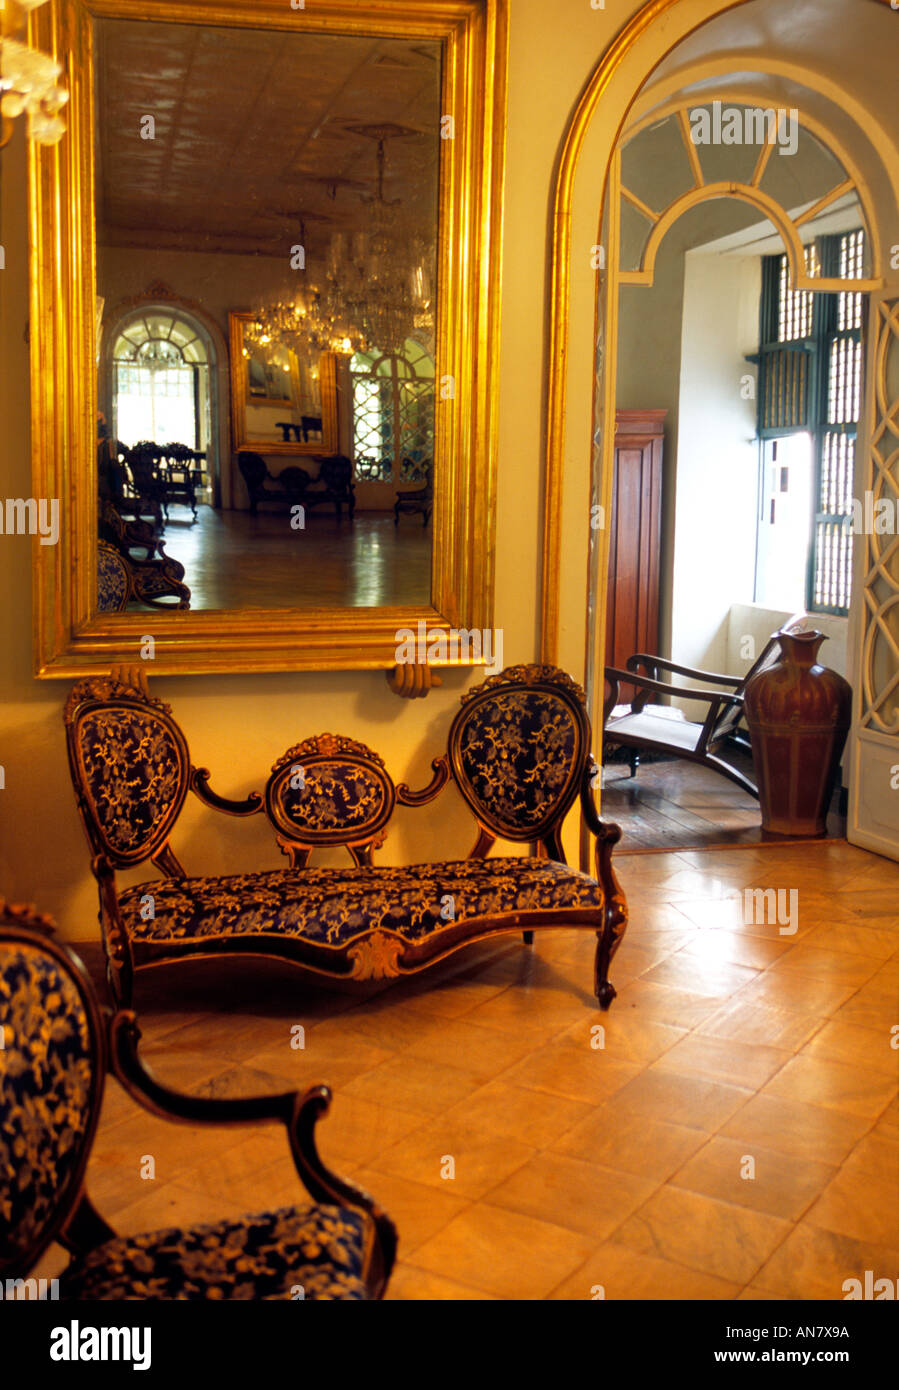 Maison du patrimoine portugais de Goa. Menezes Braganza House, village Chandor, Goa, Inde Banque D'Images